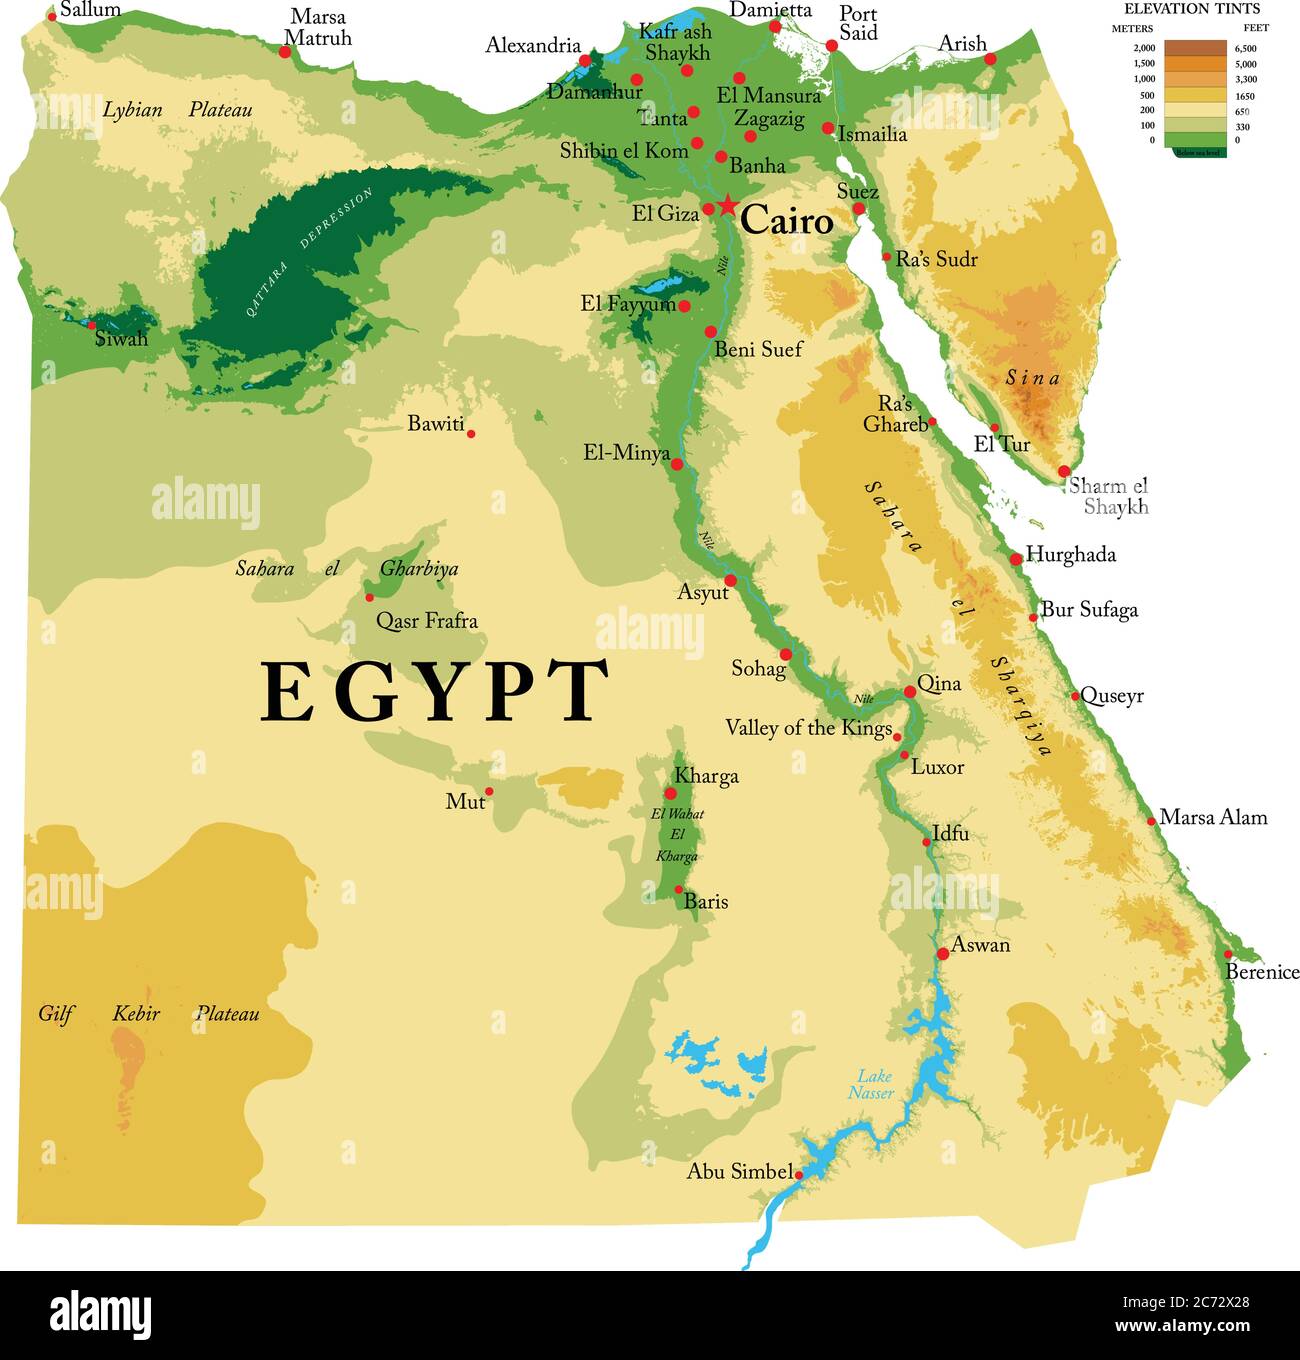 Sehr detaillierte physikalische Karte von Ägypten, im Vektorformat, mit allen Reliefformen, Regionen und großen Städten. Stock Vektor